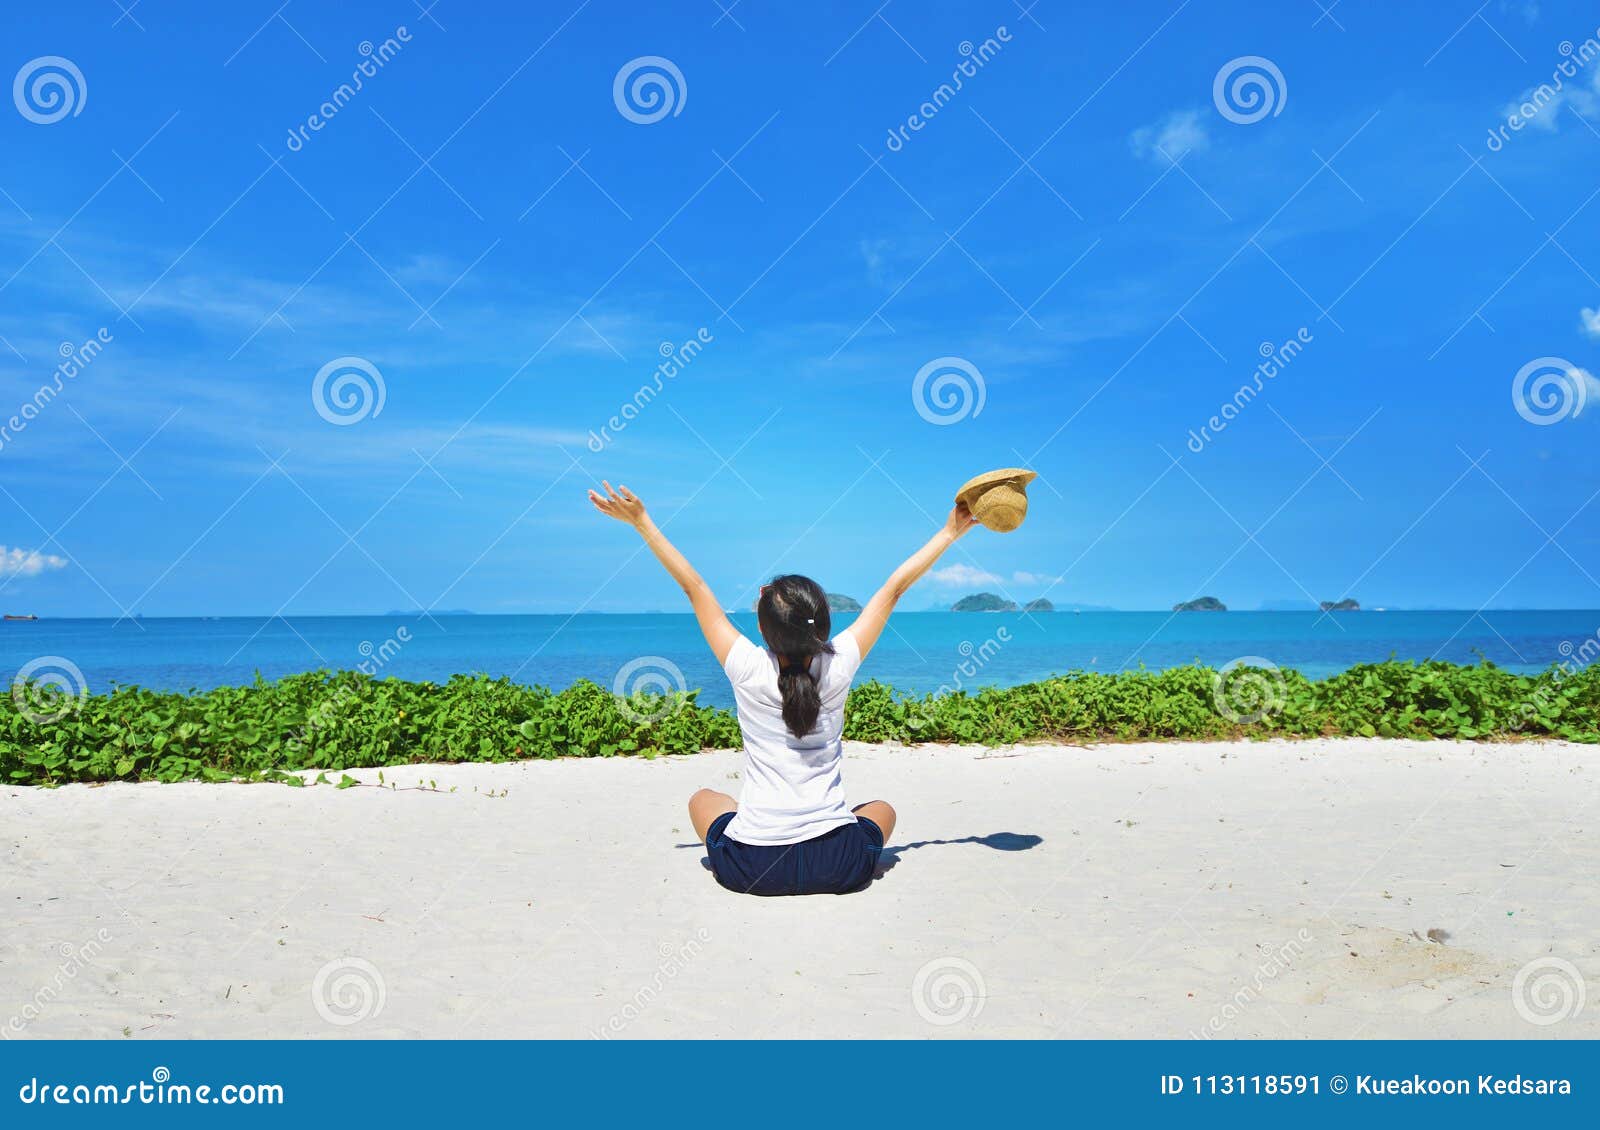 happy woman sitting enjoy life on beach